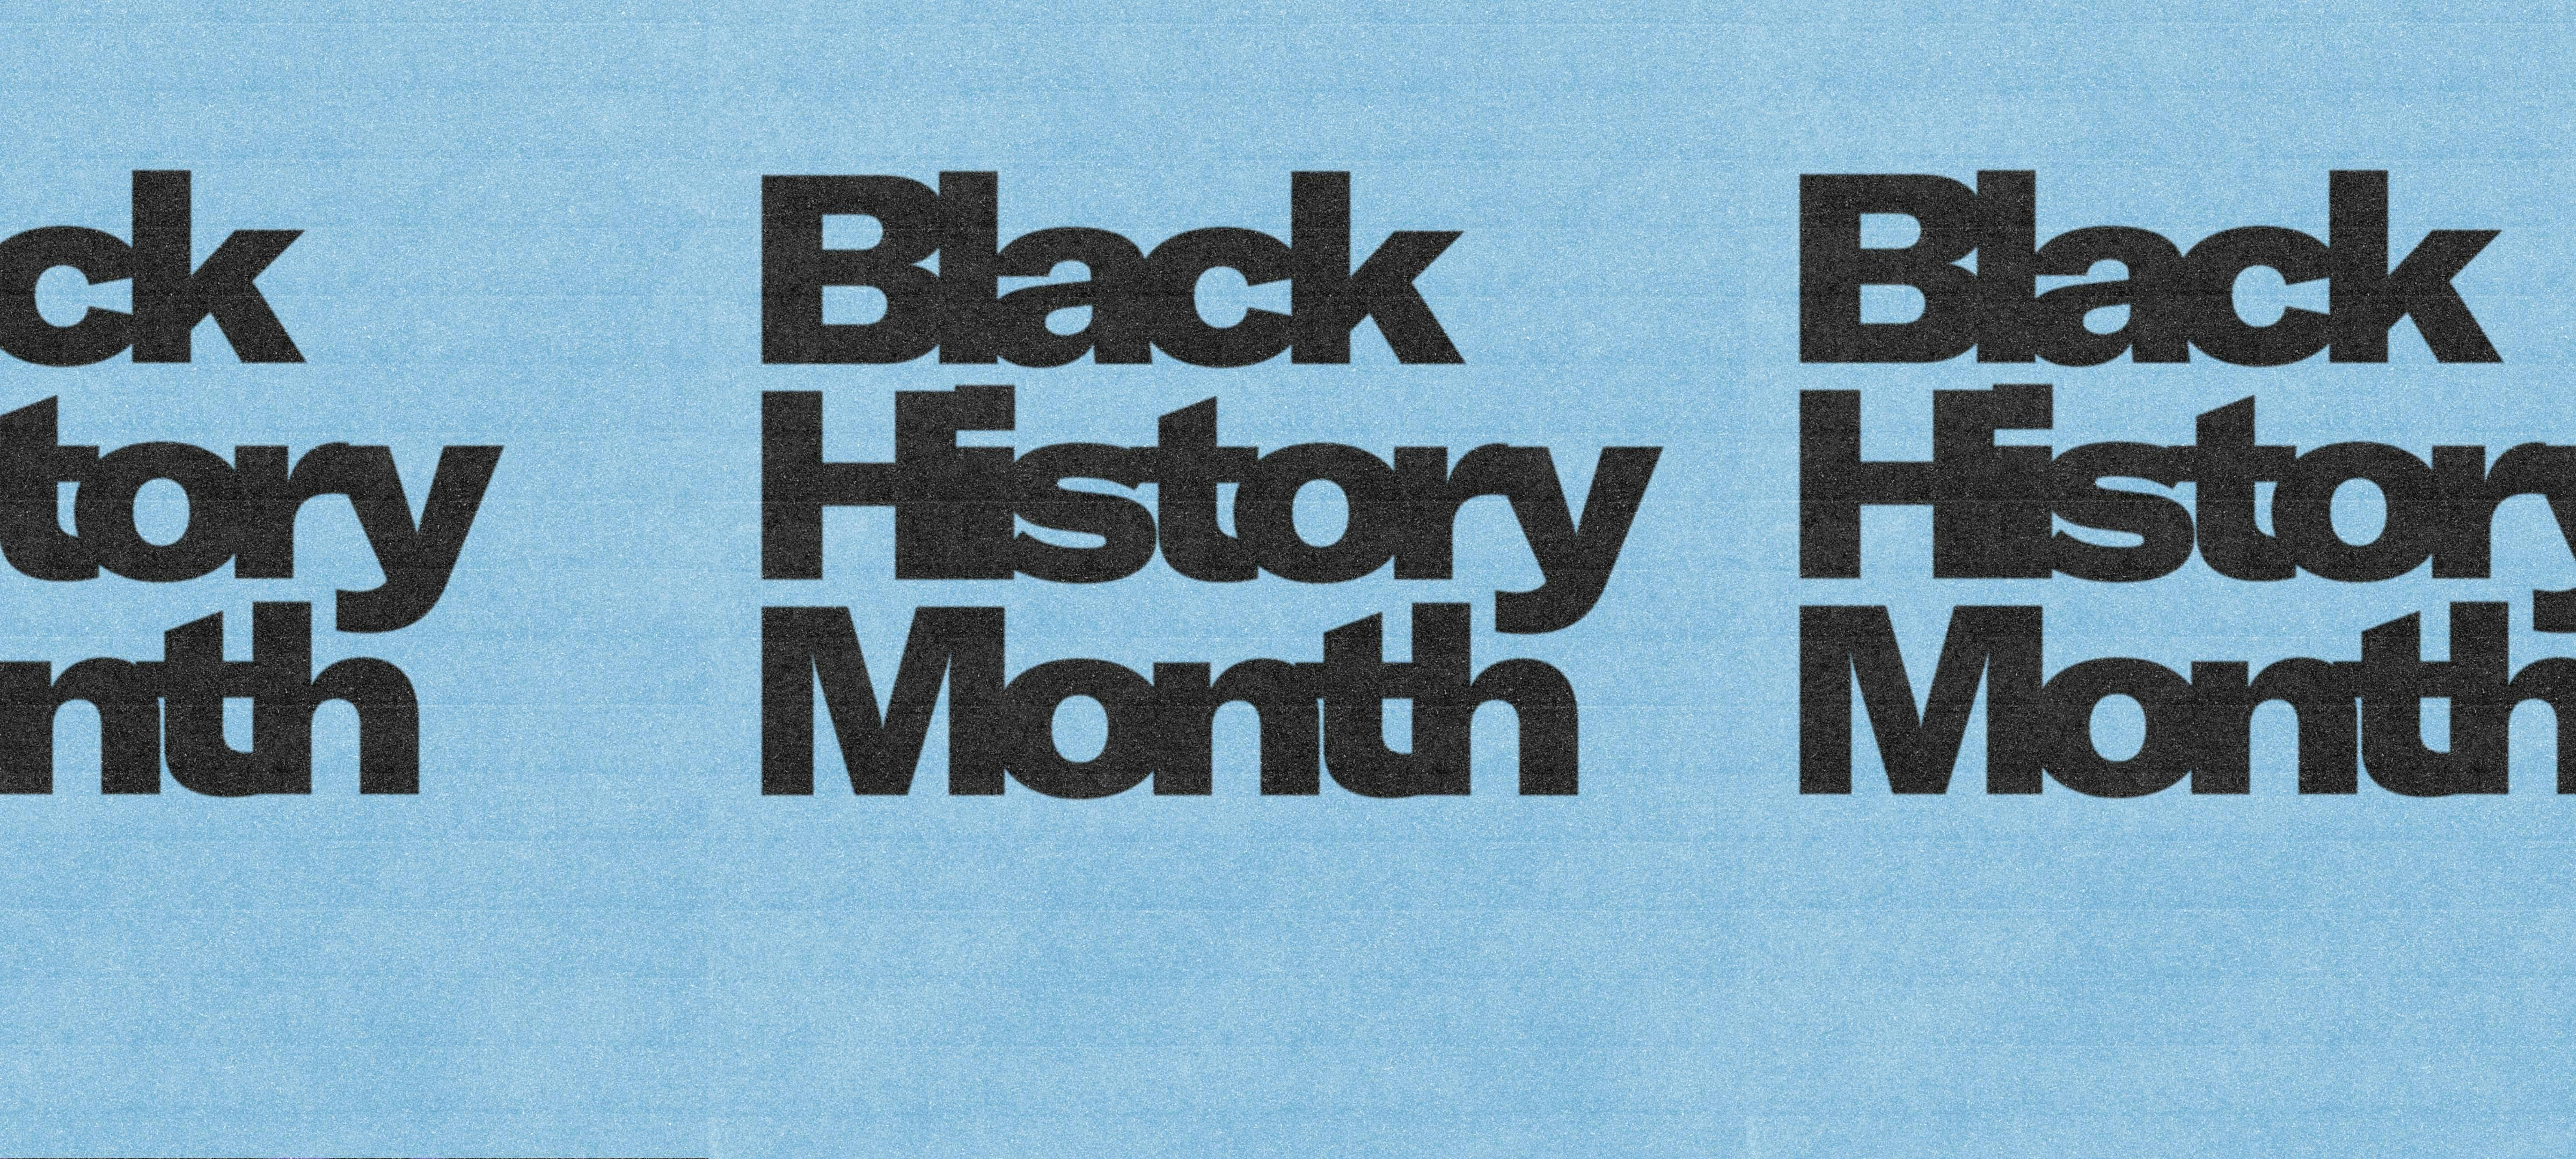 Black History Month: Week 2